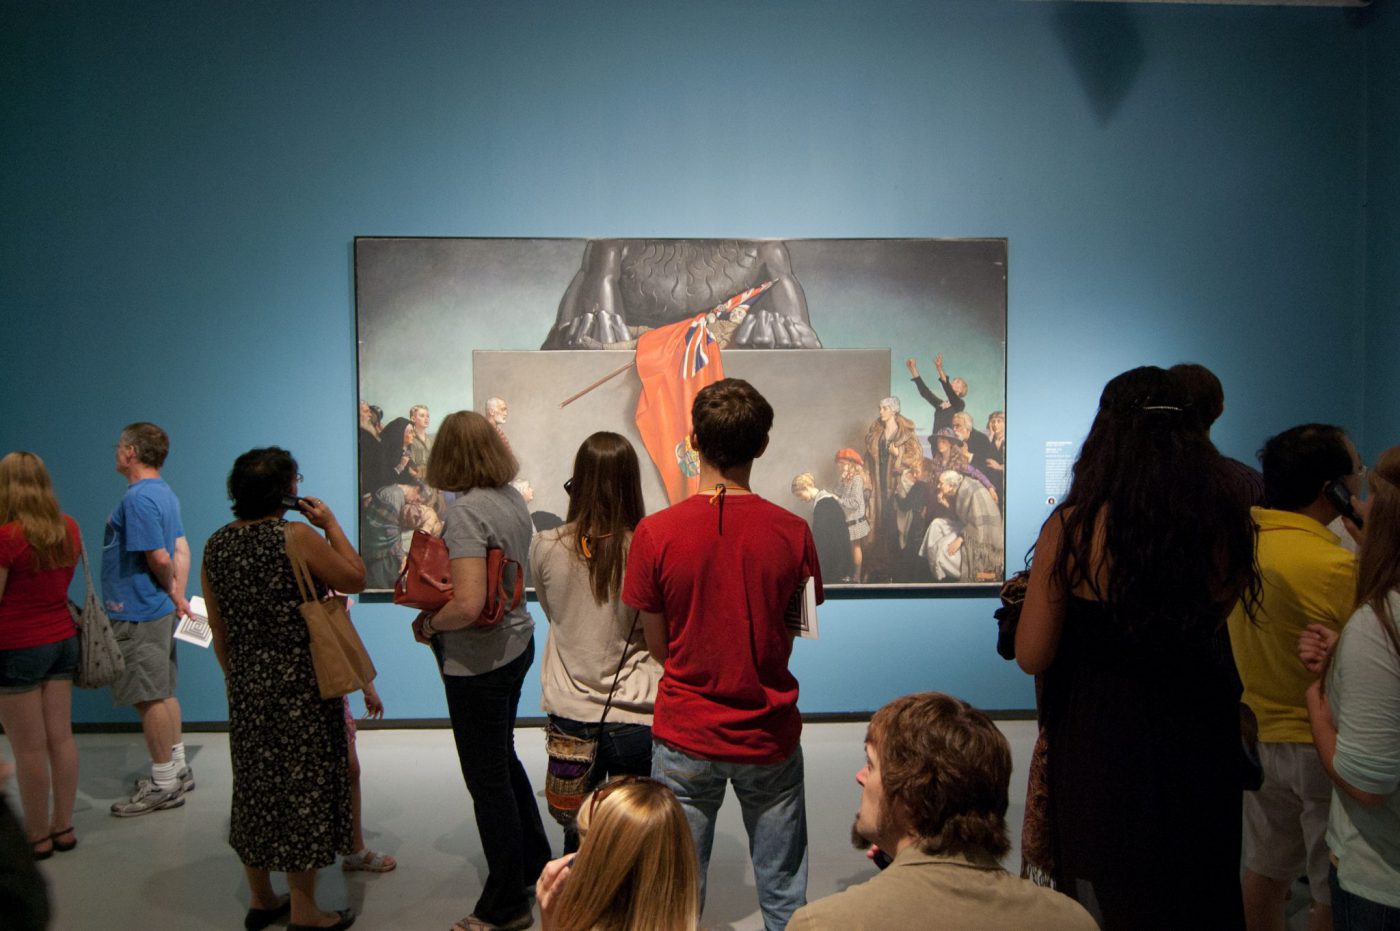 Visitors view an art piece at the Winnipeg Art Gallery-Qaumajuq.